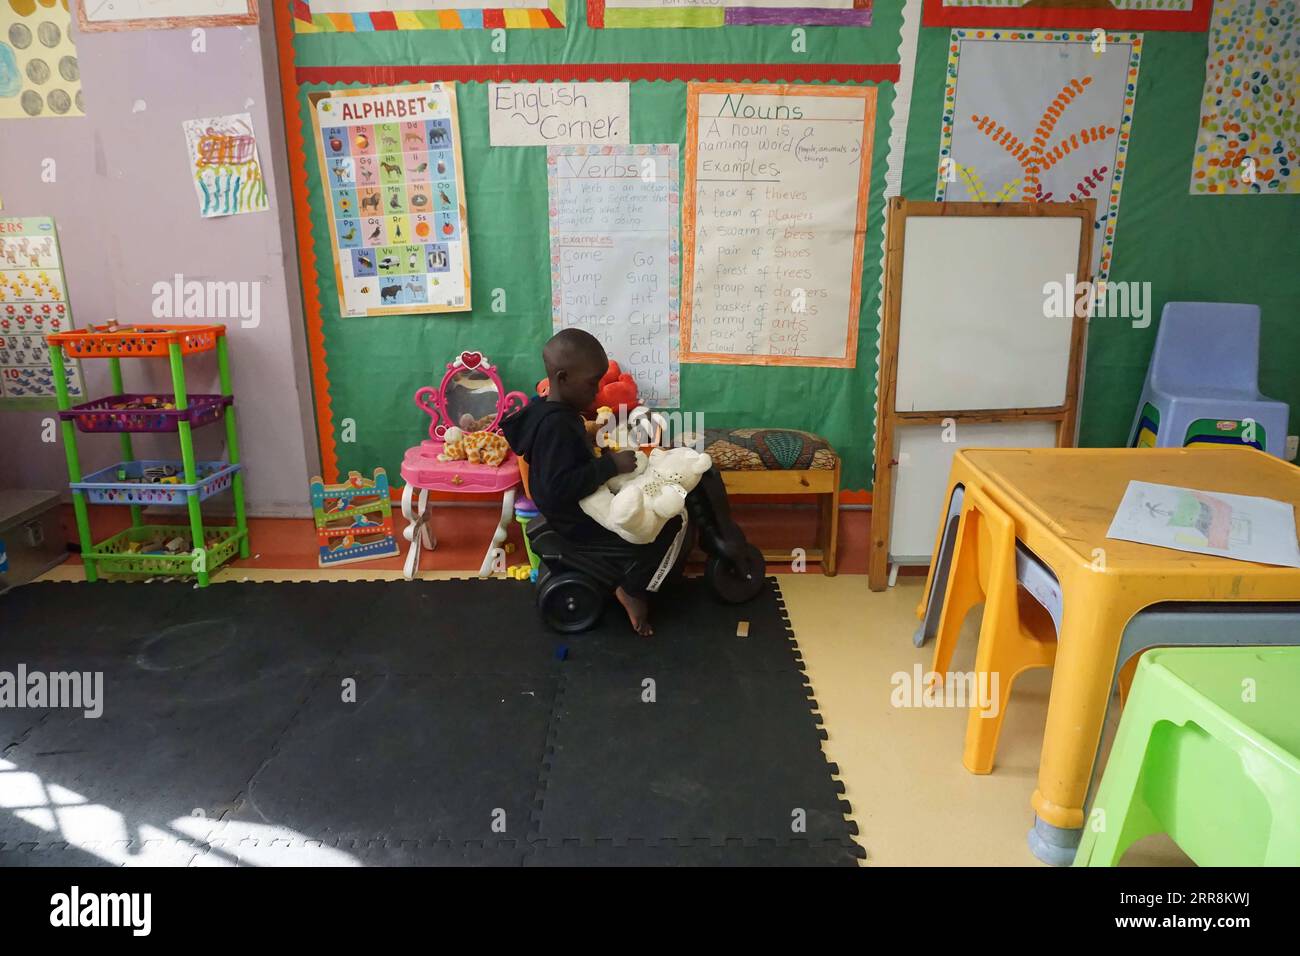 210512 -- SAMBIA, 12. Mai 2021 -- Ein Junge, der Krebs überlebt, spielt am 19. April 2021 in Lusaka, der Hauptstadt Sambias, mit Spielzeug in einem Lernraum von Twende Education for All, einer gemeinnützigen Organisation, die benachteiligten Kindern in Sambia pädagogische Unterstützung bietet. ZU GEHEN MIT Feature: Sambische Schule im Krankenhaus gibt Hoffnung für Kinder mit Krebs Foto von /XINHUA SAMBIA-LUSAKA-CHILDREN-CANCER LillianxBanda PUBLICATIONxNOTxINxCHN Stockfoto